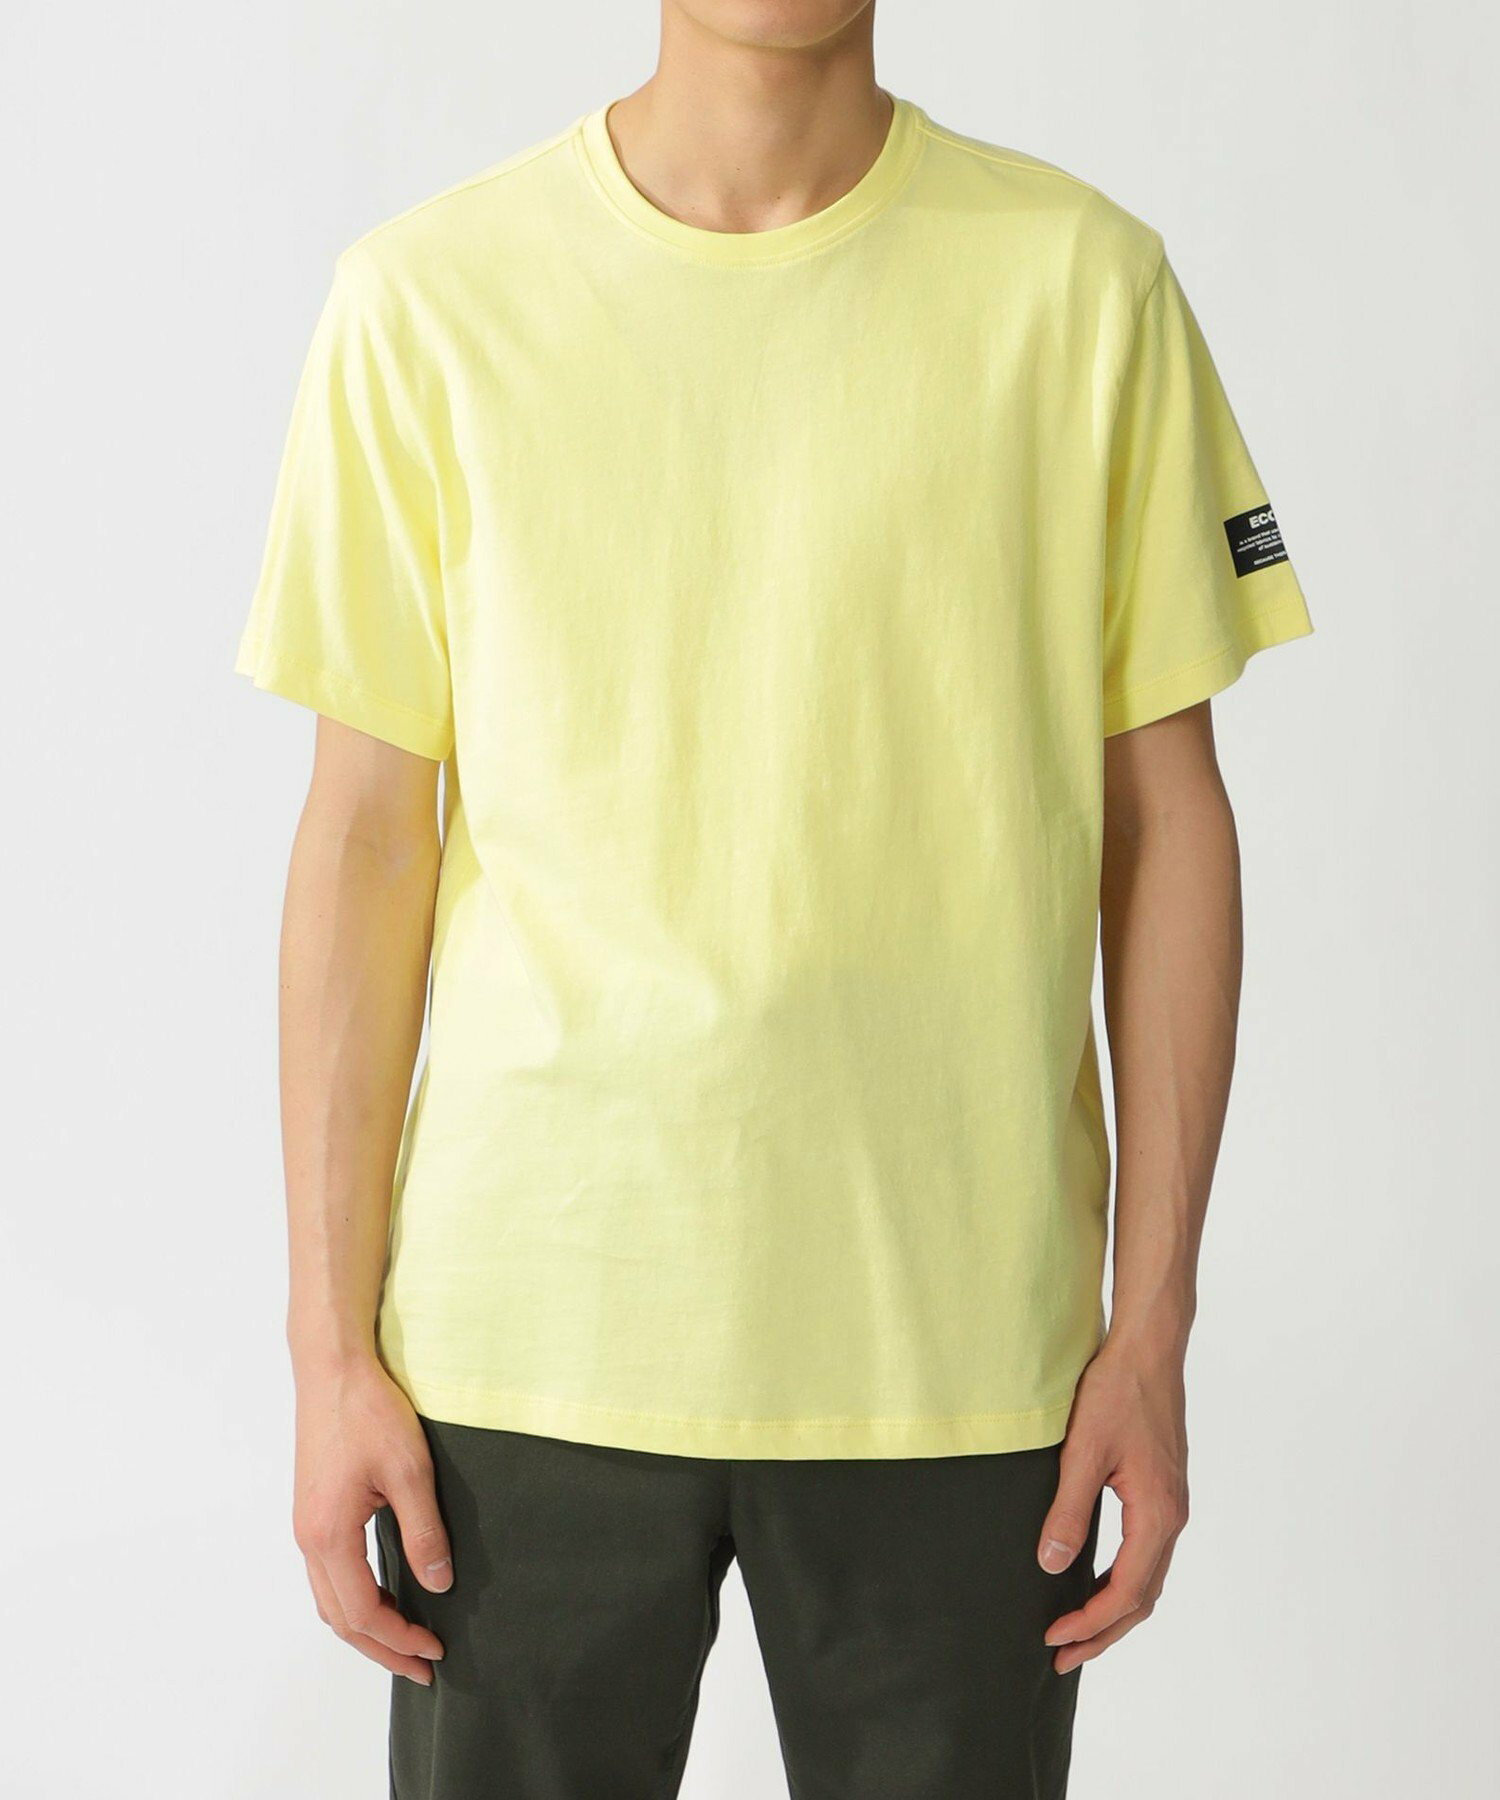 VENT ベーシック カラーTシャツ / VENT T-SHIRT MAN